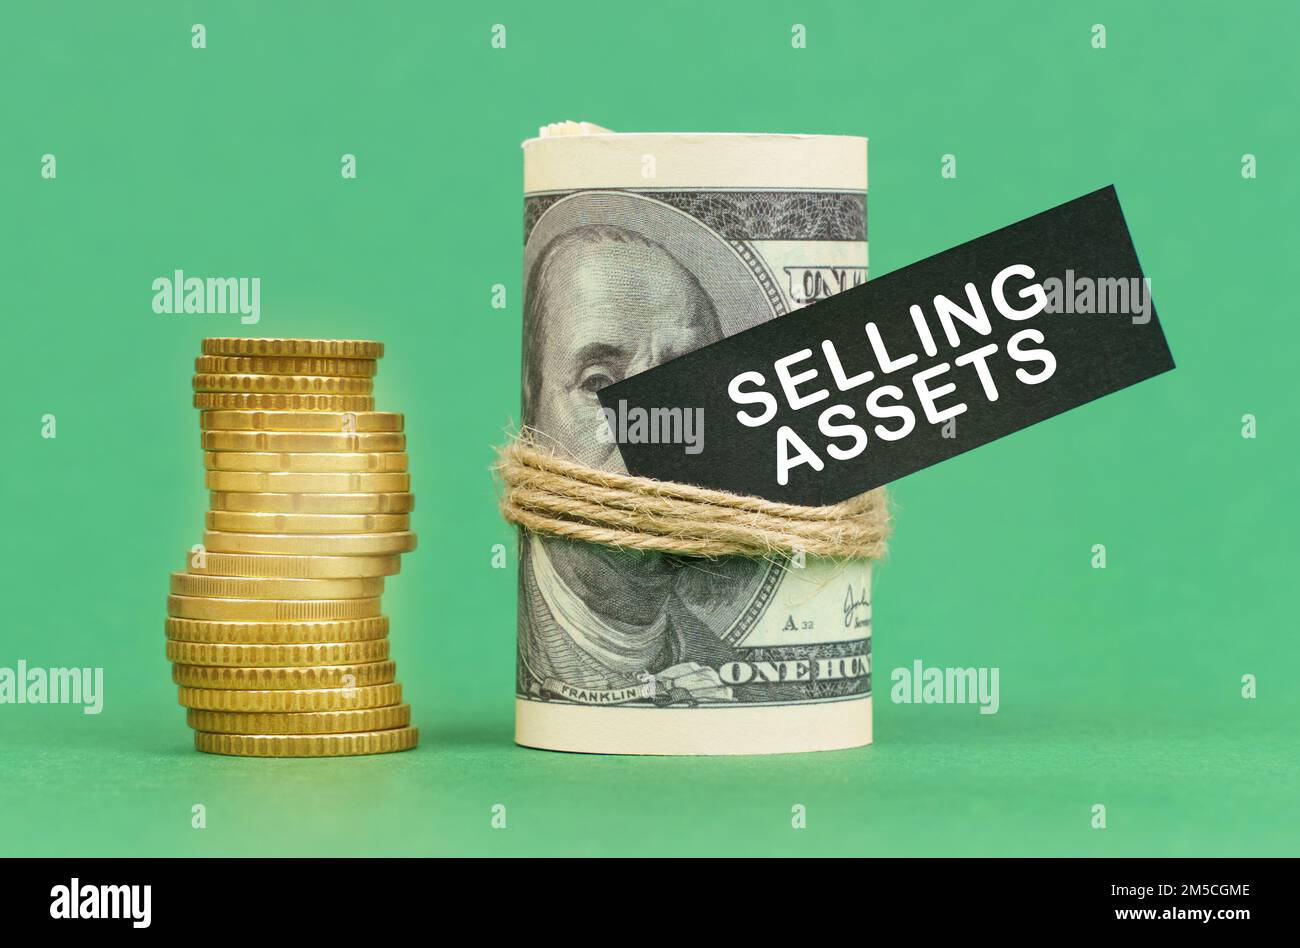 Geschäftskonzept. Auf einer grünen Oberfläche befinden sich Münzen und Dollar in einem Bündel. Auf dem Dollarzeichen mit der Aufschrift "Selling Assets" Stockfoto